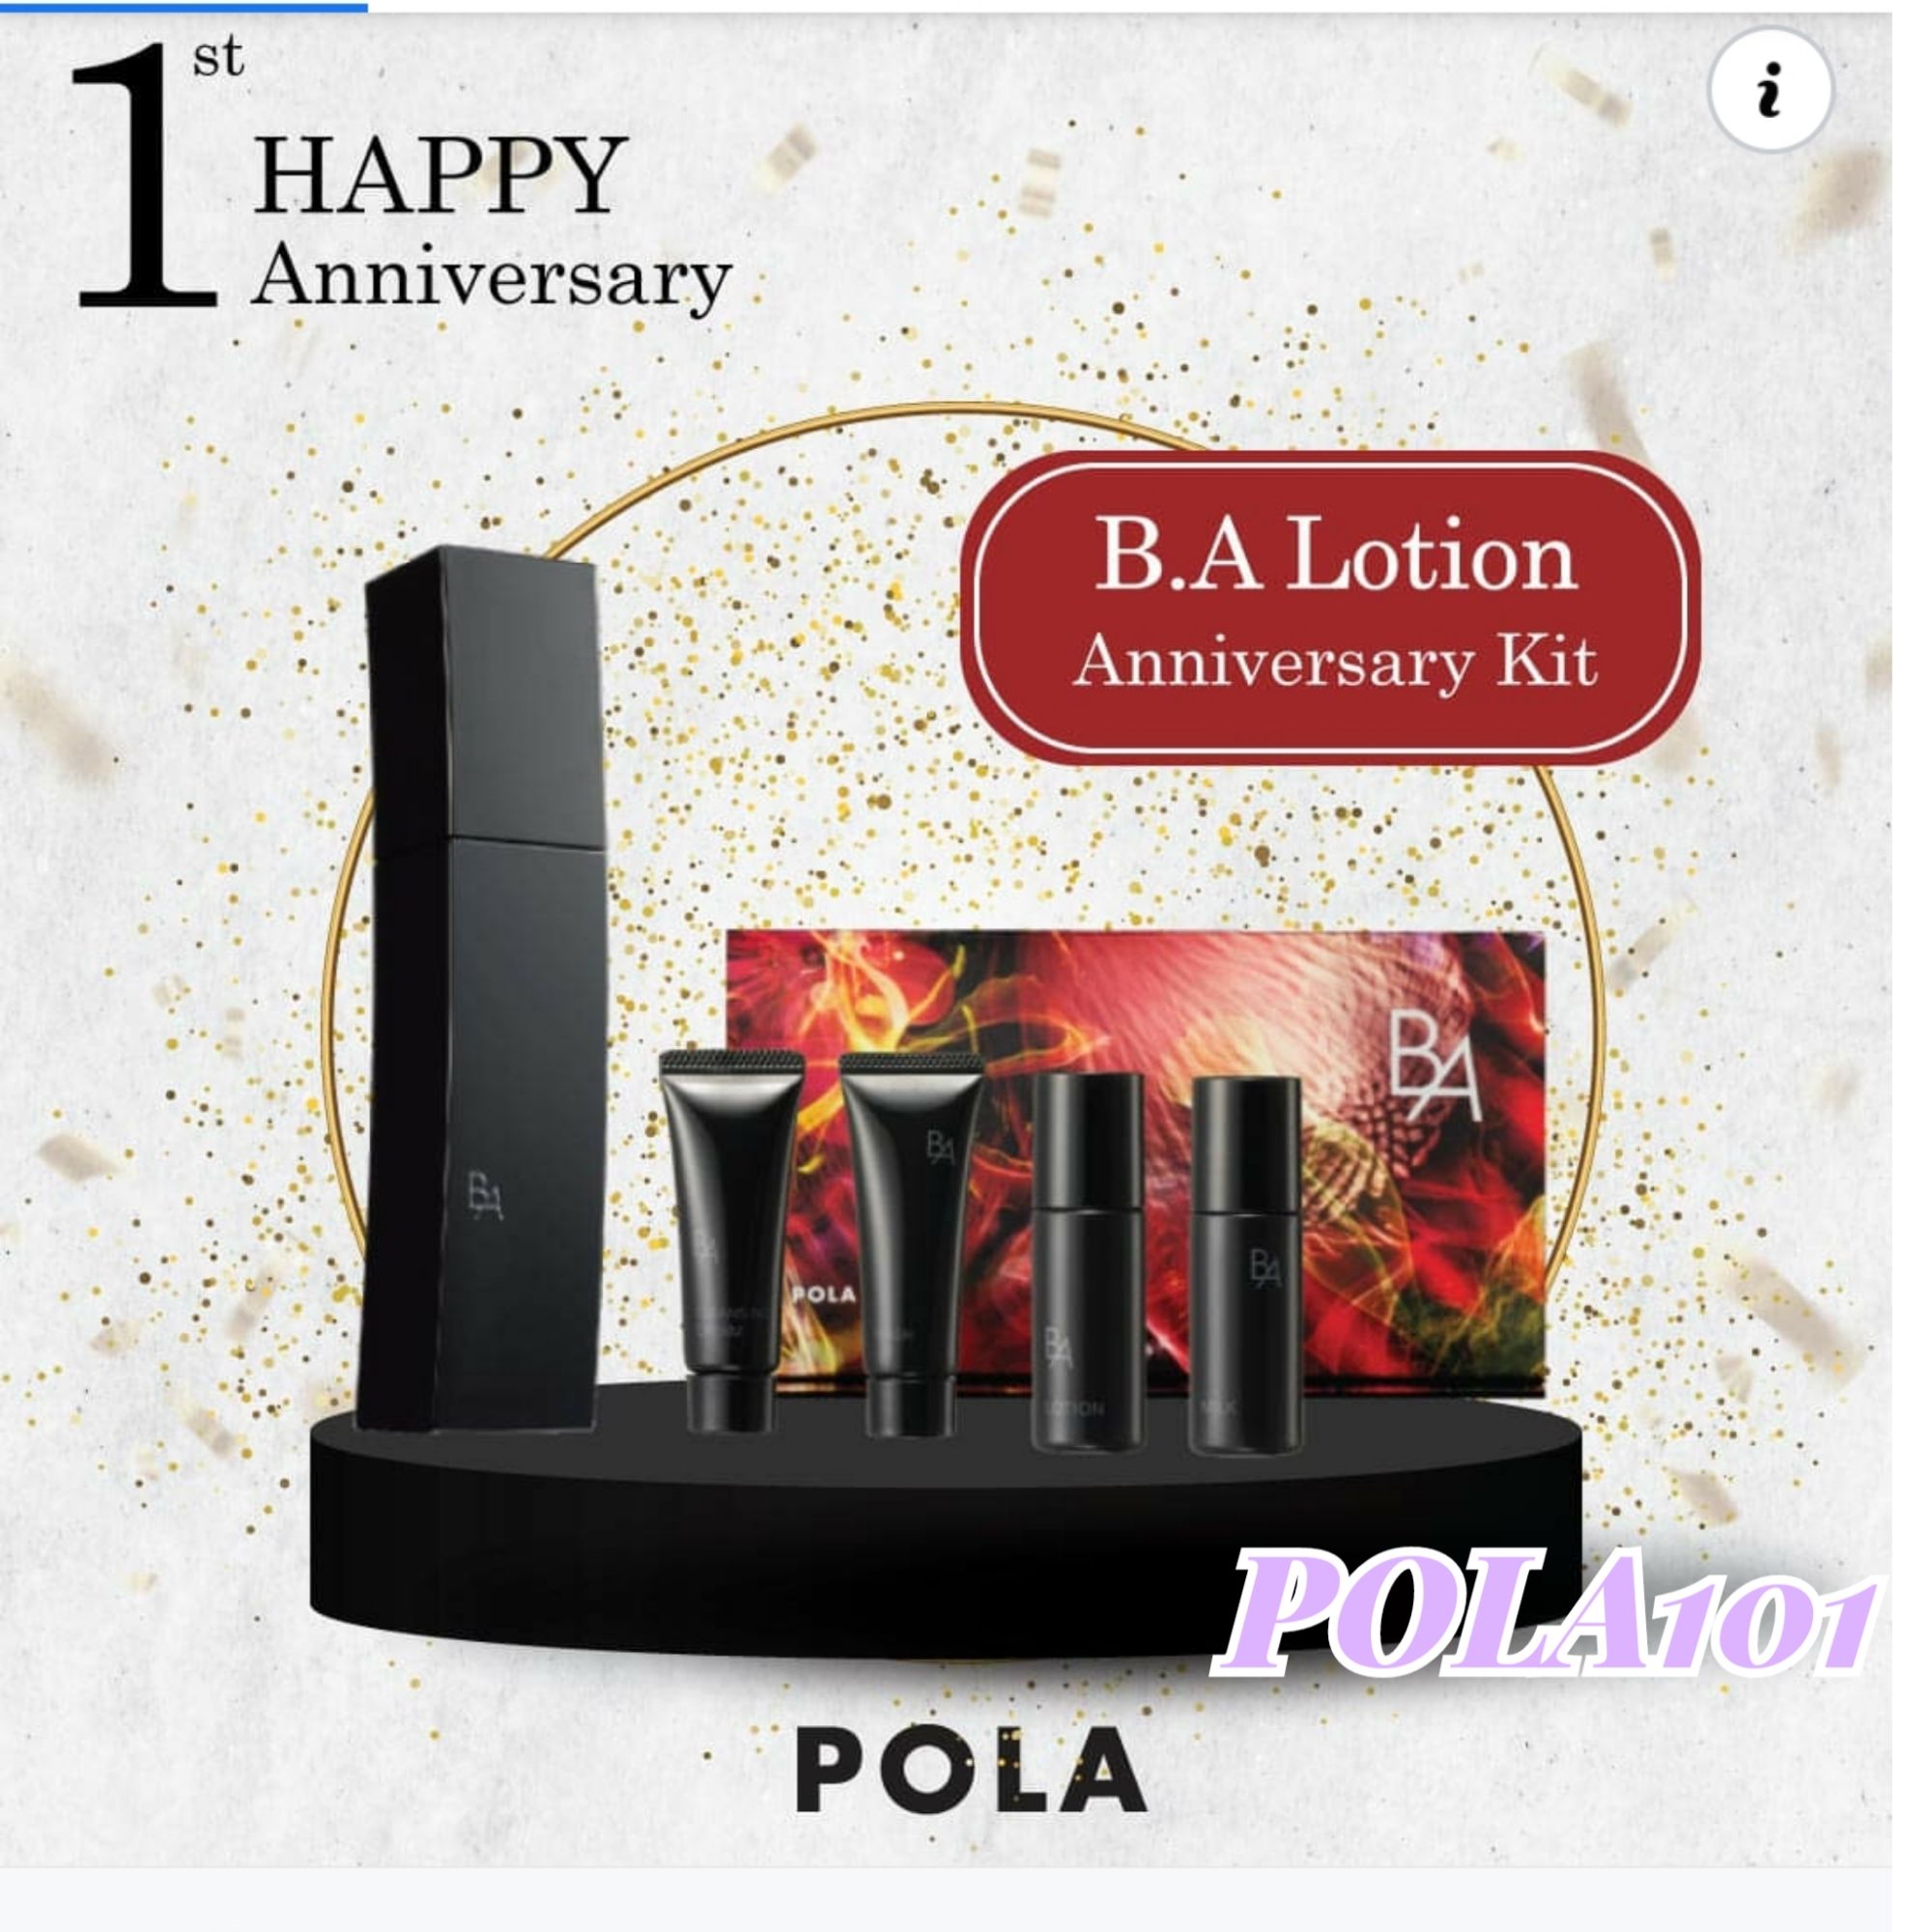 Pola Ba Lotion ราคาถูก ซื้อออนไลน์ที่ - พ.ค. 2022 | Lazada.co.th